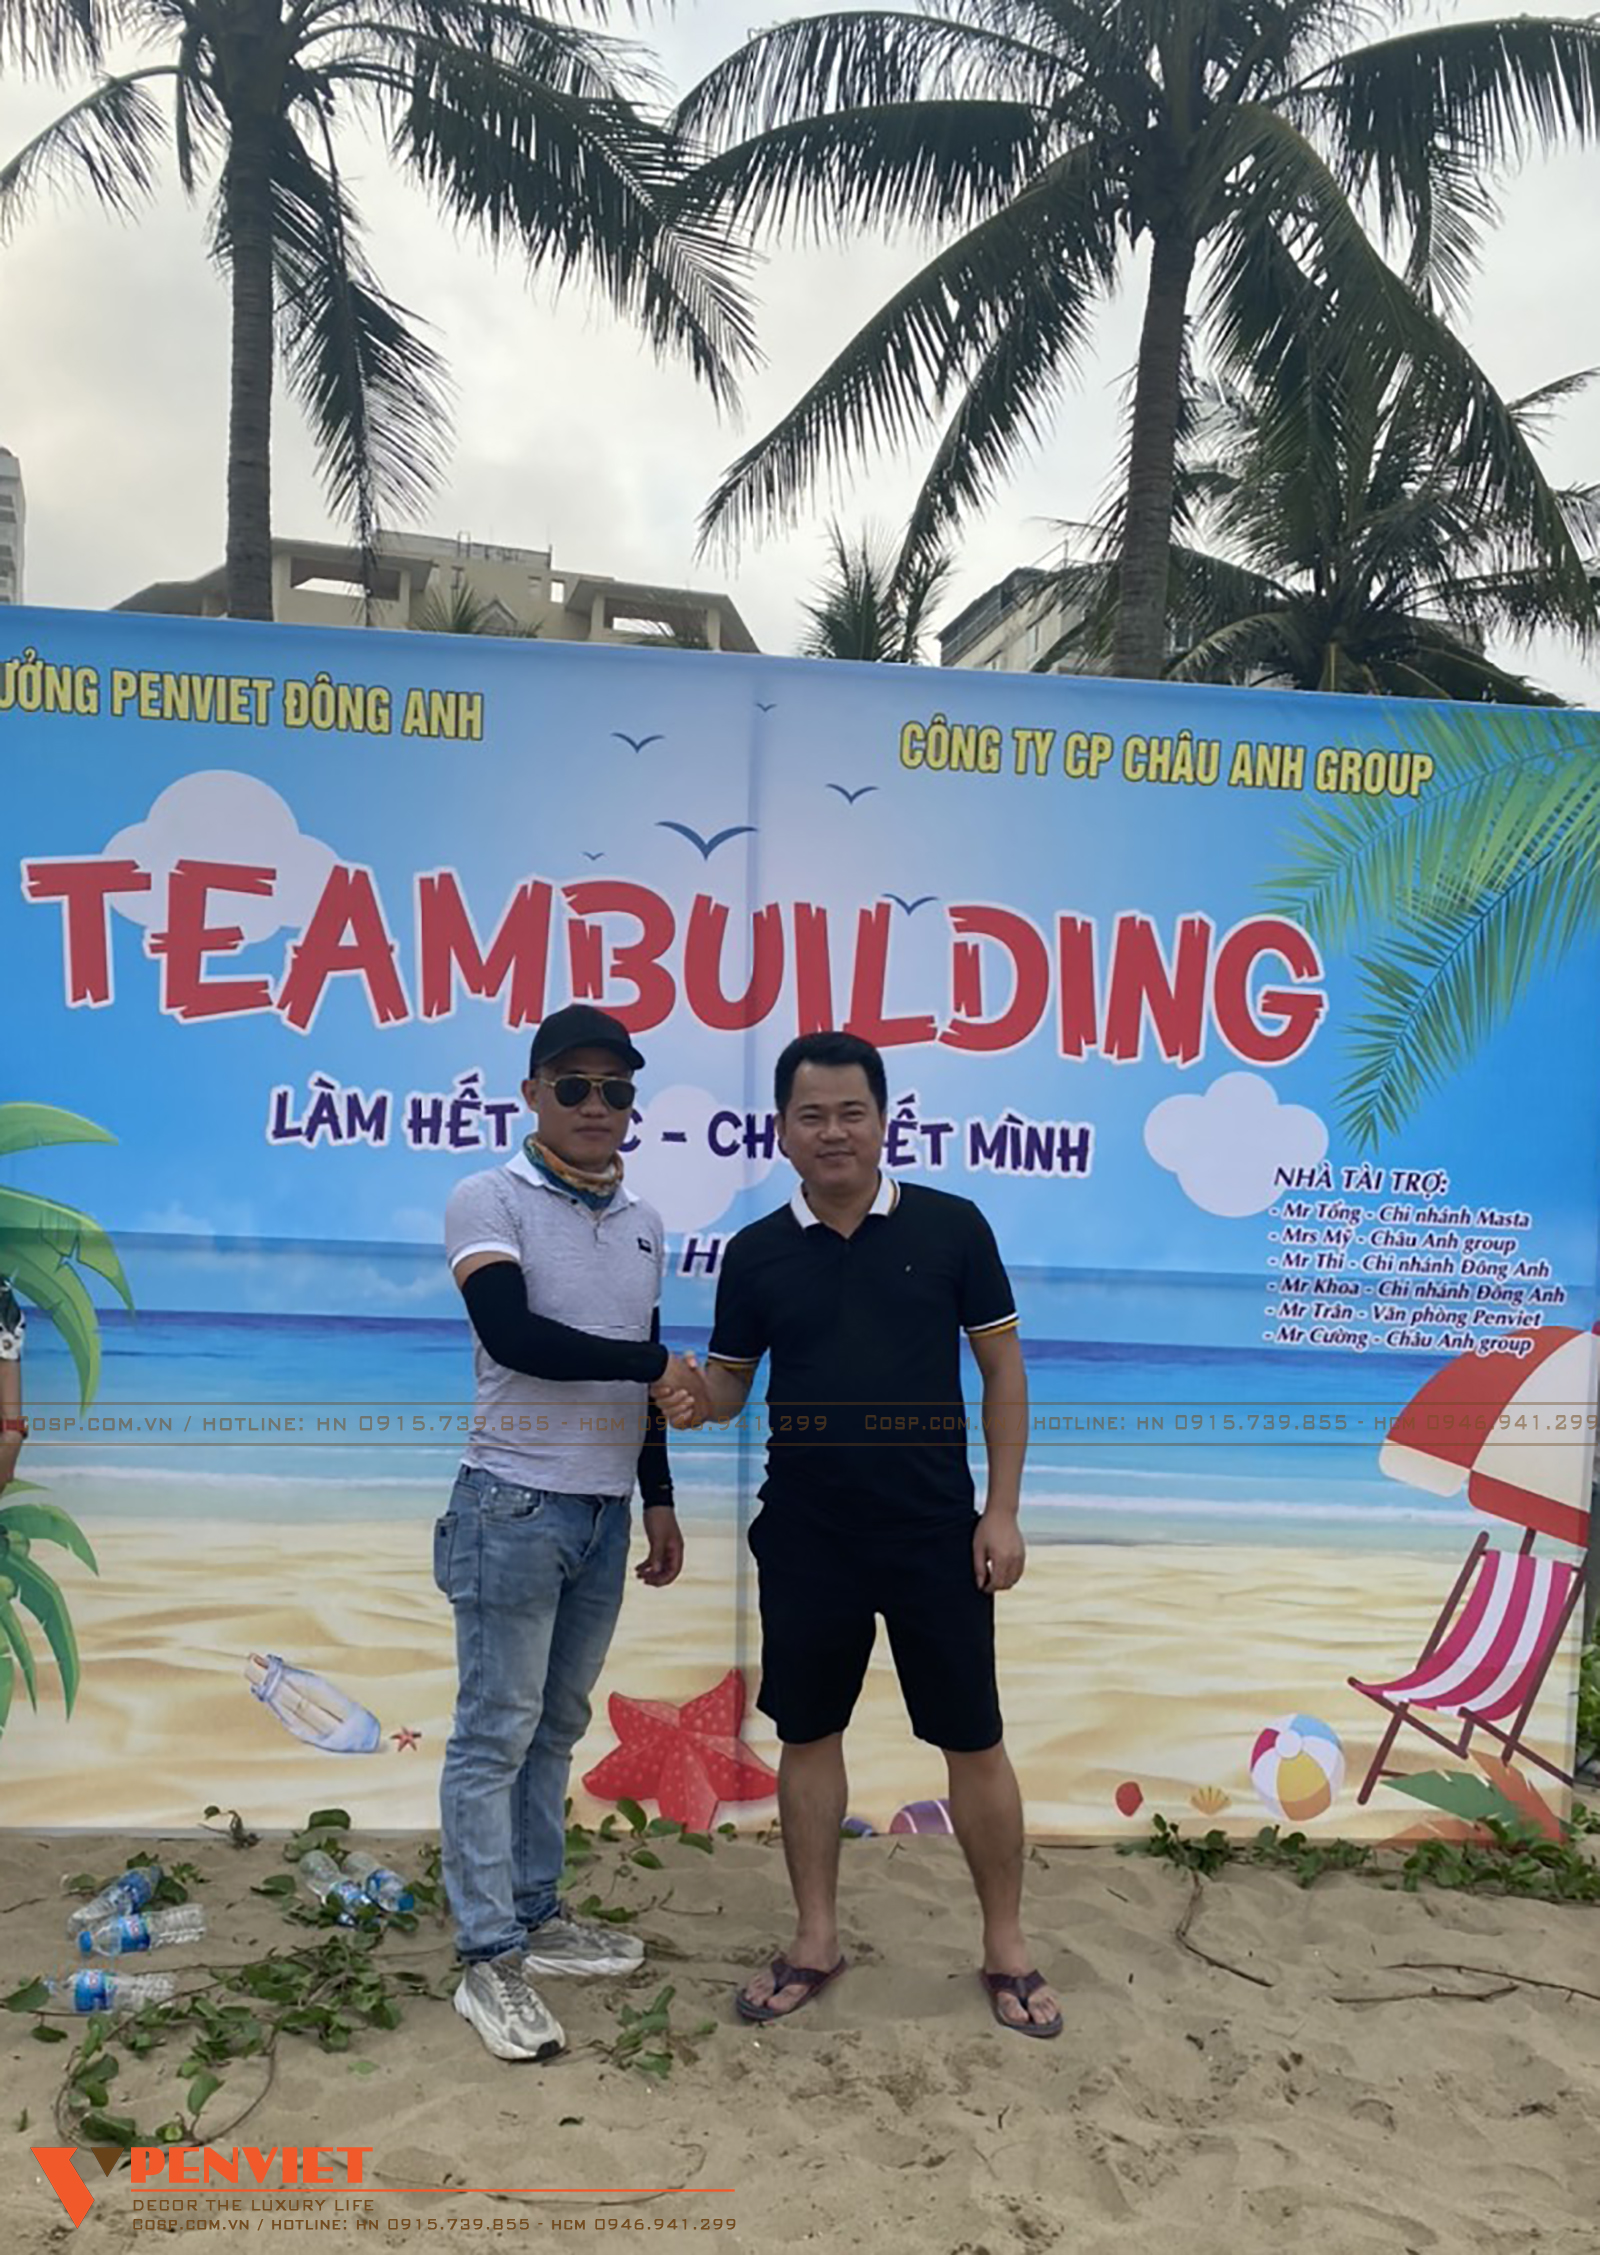 Ông Đỗ Xuân Huỳnh - CT HĐQT PenViet tham gia team building cùng cán bộ nhân viên